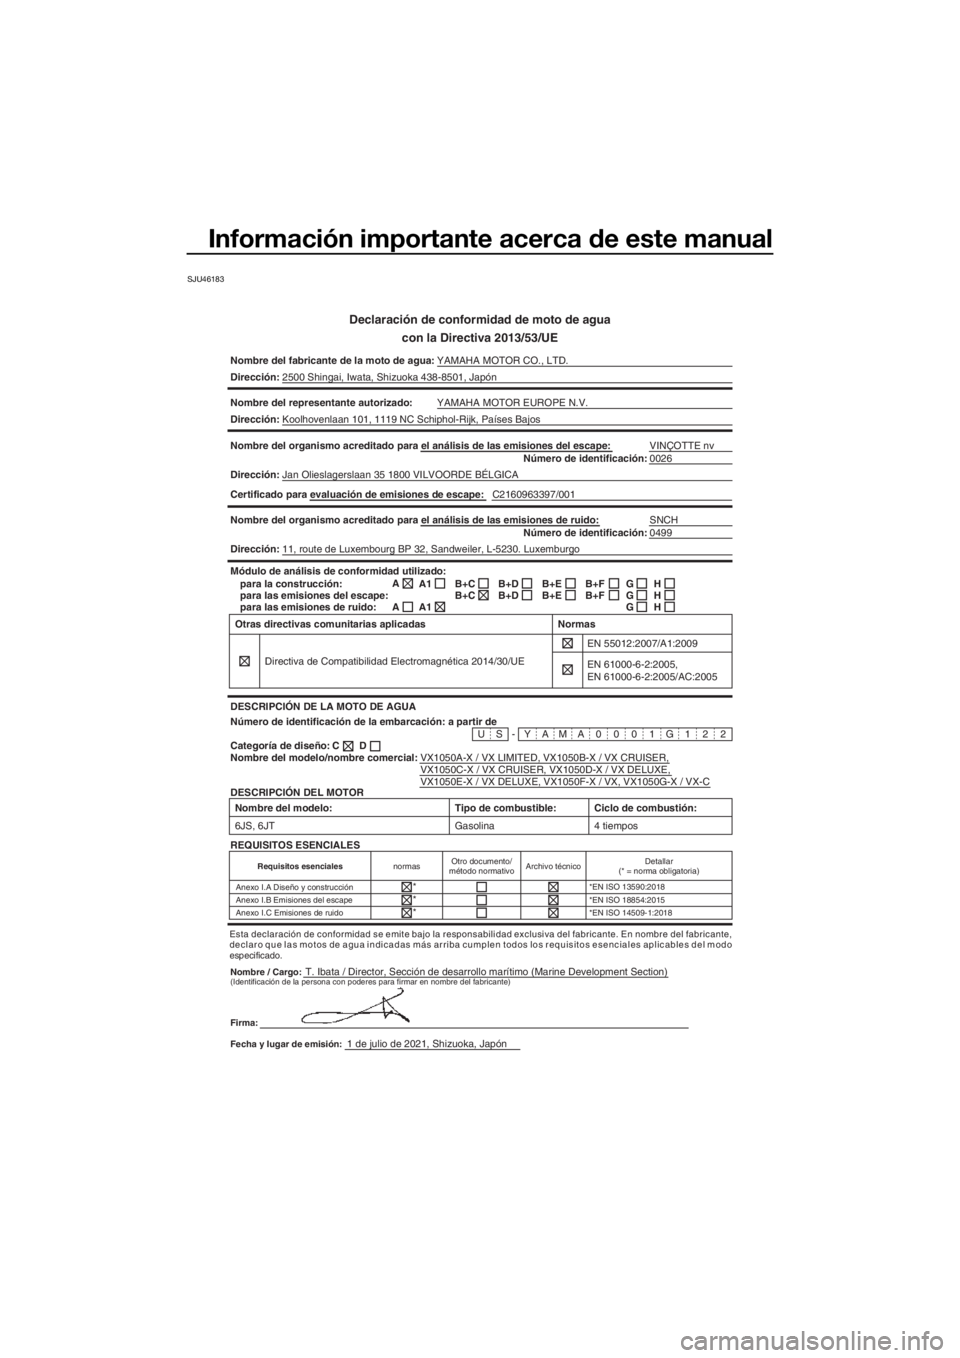 YAMAHA VX-C 2022  Manuale de Empleo (in Spanish) Información importante acerca de este manual
SJU46183
Declaración de conformidad de moto de aguacon la Directiva 2013/53/UE
Nombre del fabricante de la moto de agua: YAMAHA MOTOR CO., LTD.
Direcció